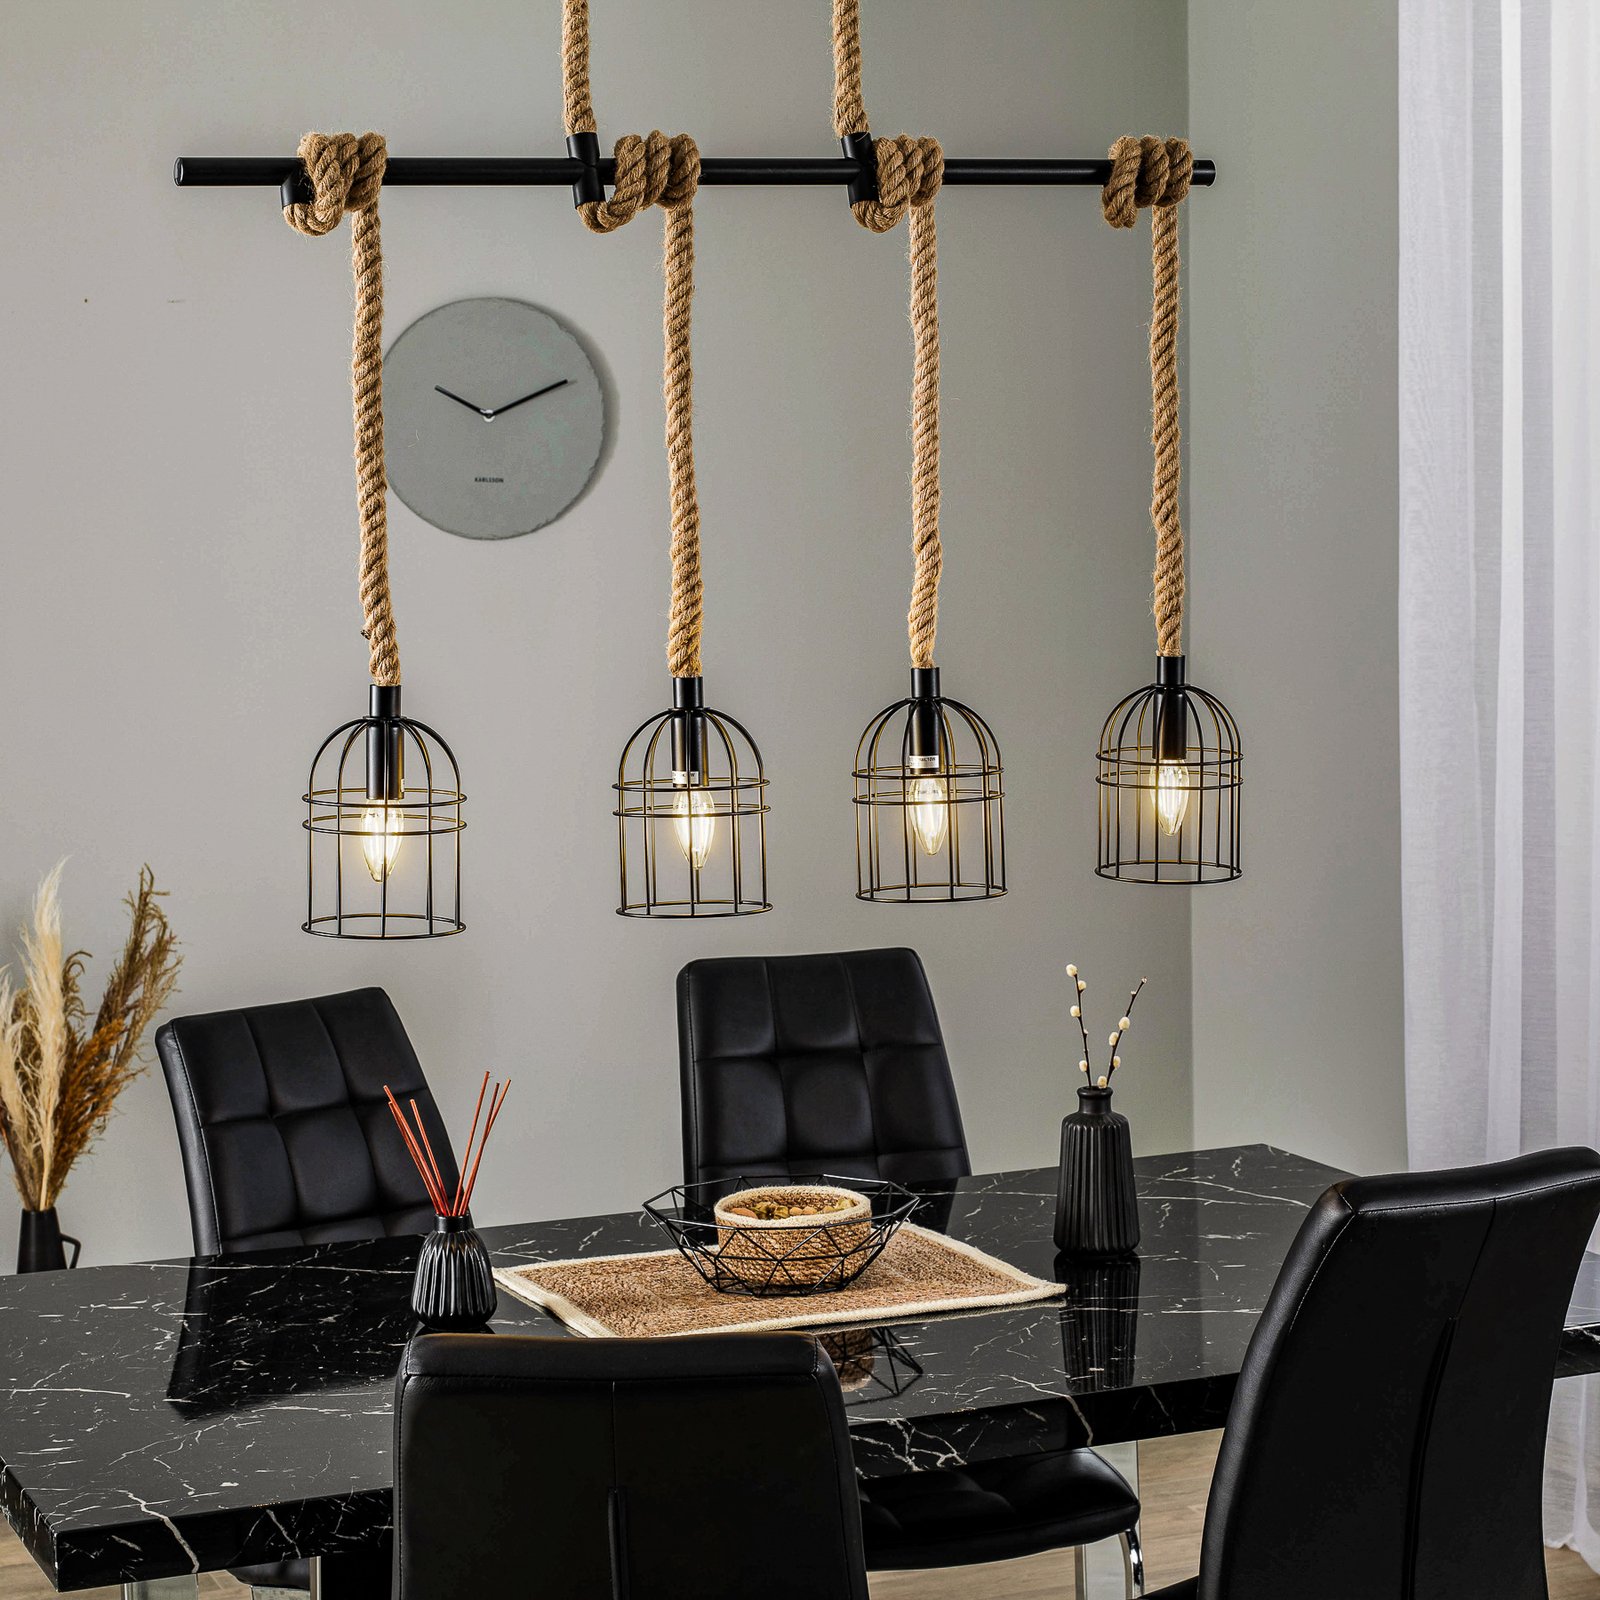 Lindby Kaya hanglamp met touwophanging 4-lamps